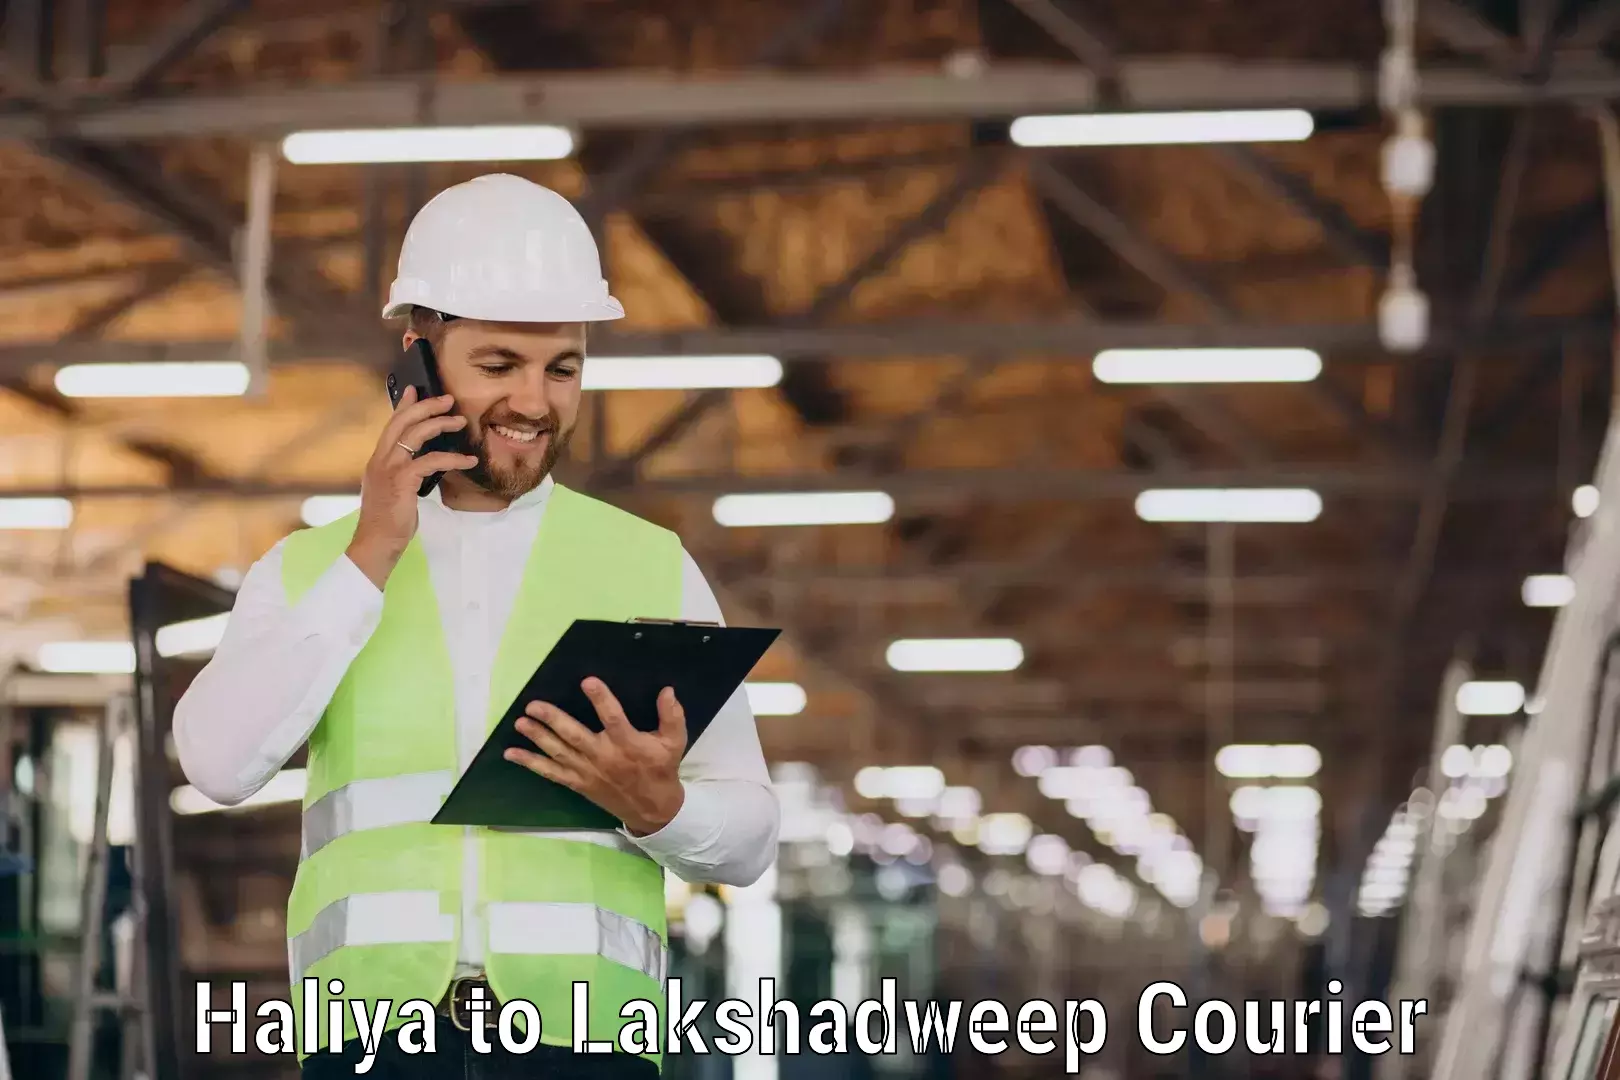 Customer-focused courier Haliya to Lakshadweep